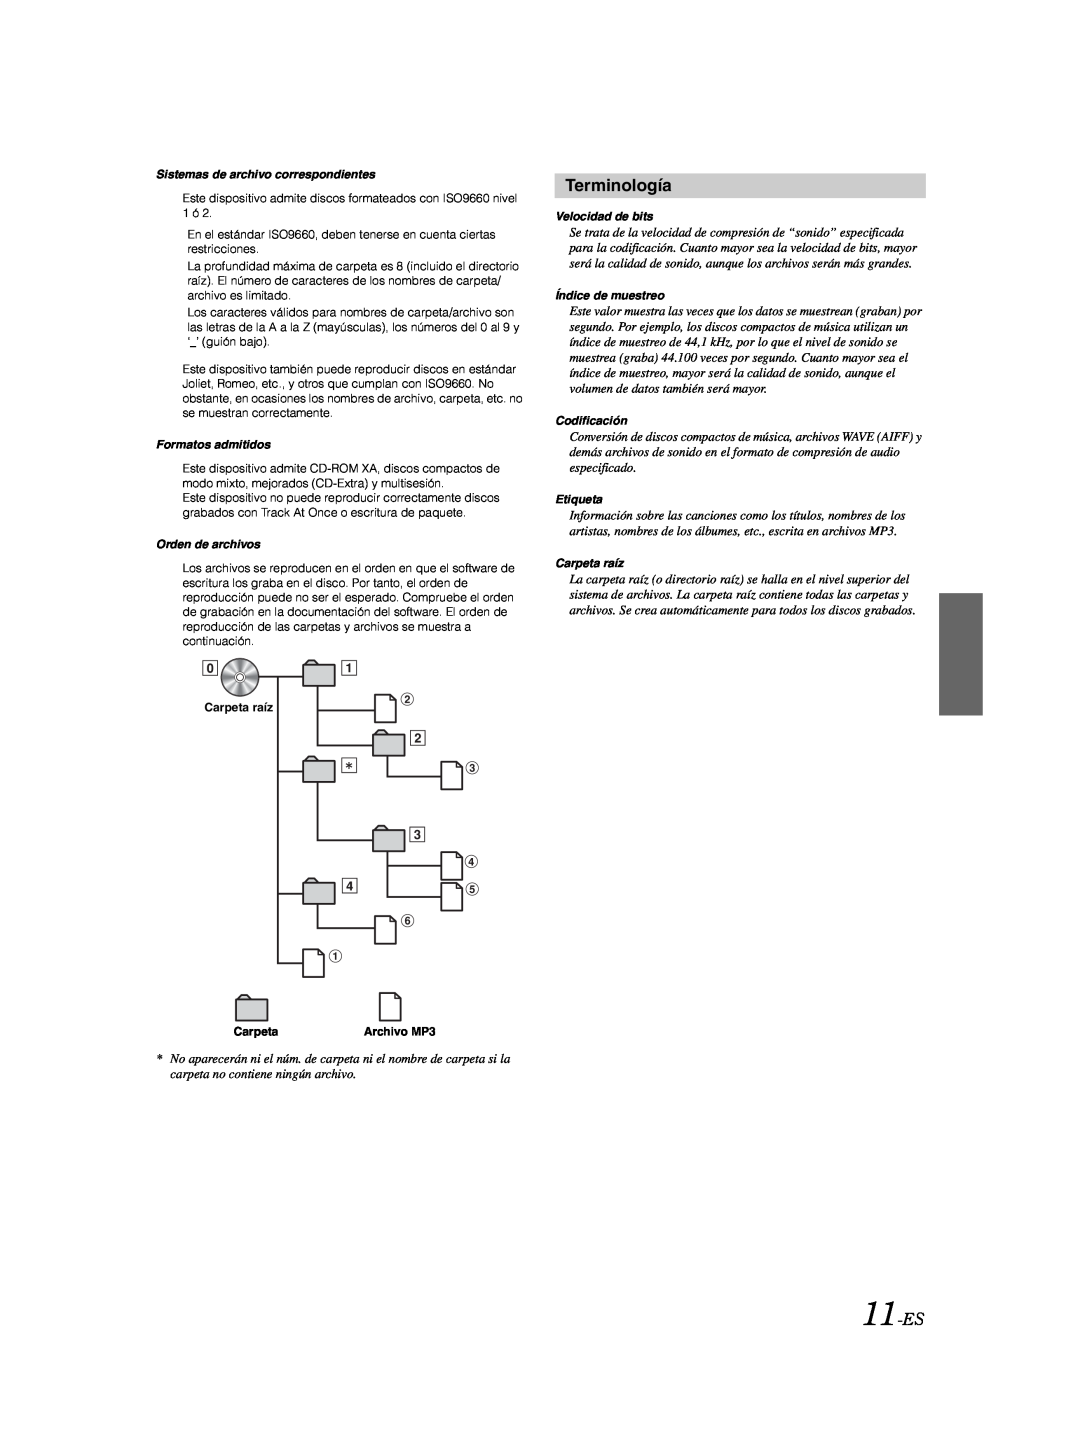 Alpine CDE-9870 owner manual Terminología, 11-ES 